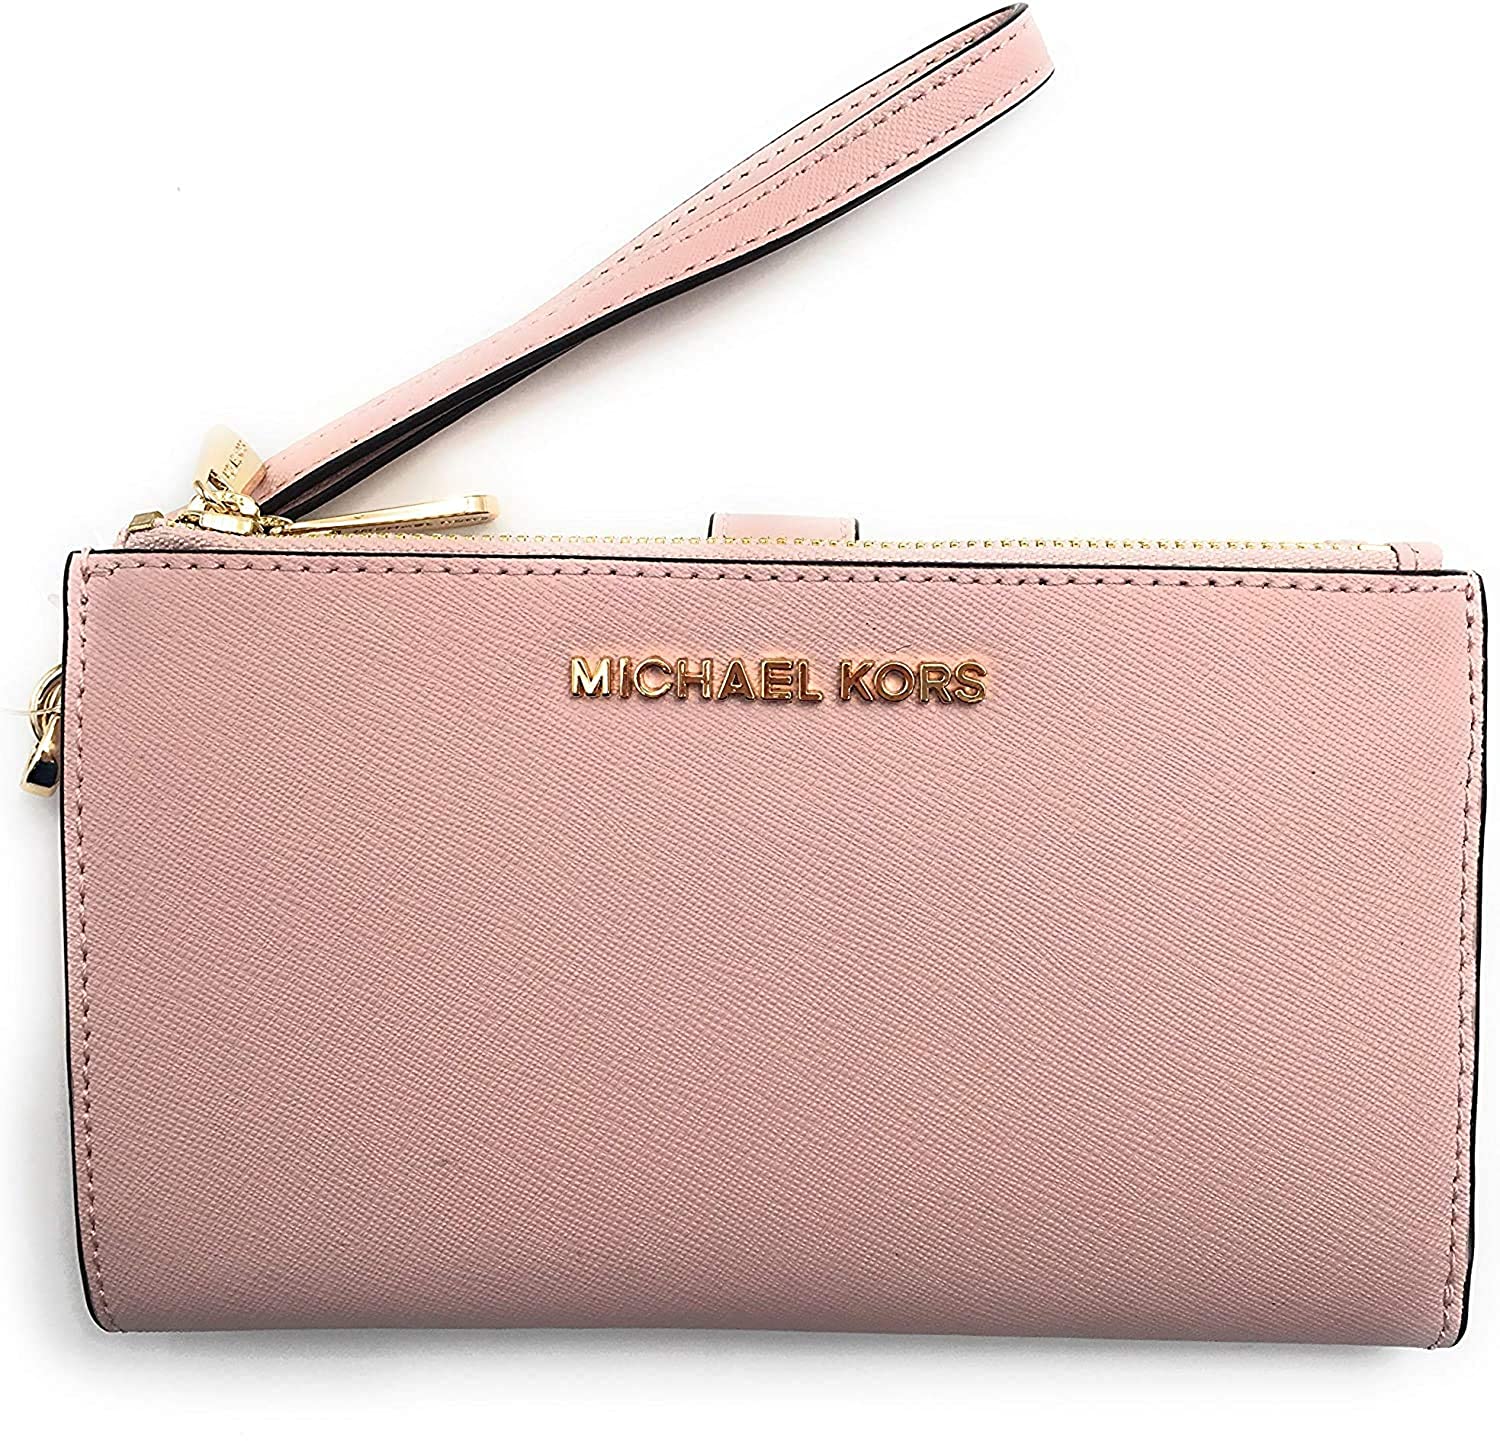 Michael Kors double zip wristlet/wallet